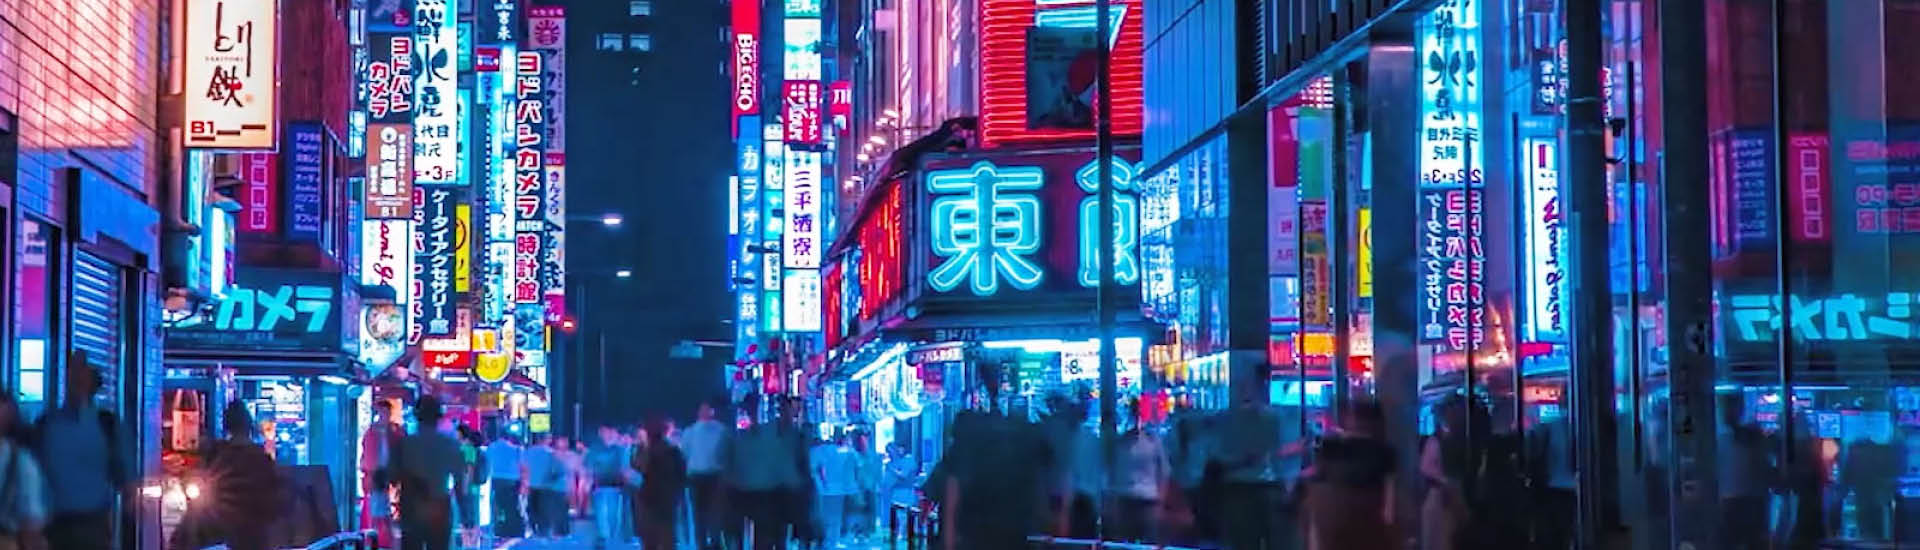 Cena noturna de cidade bem iluminada por diversos painéis com luz neon, com pessoas caminhando pelas ruas.